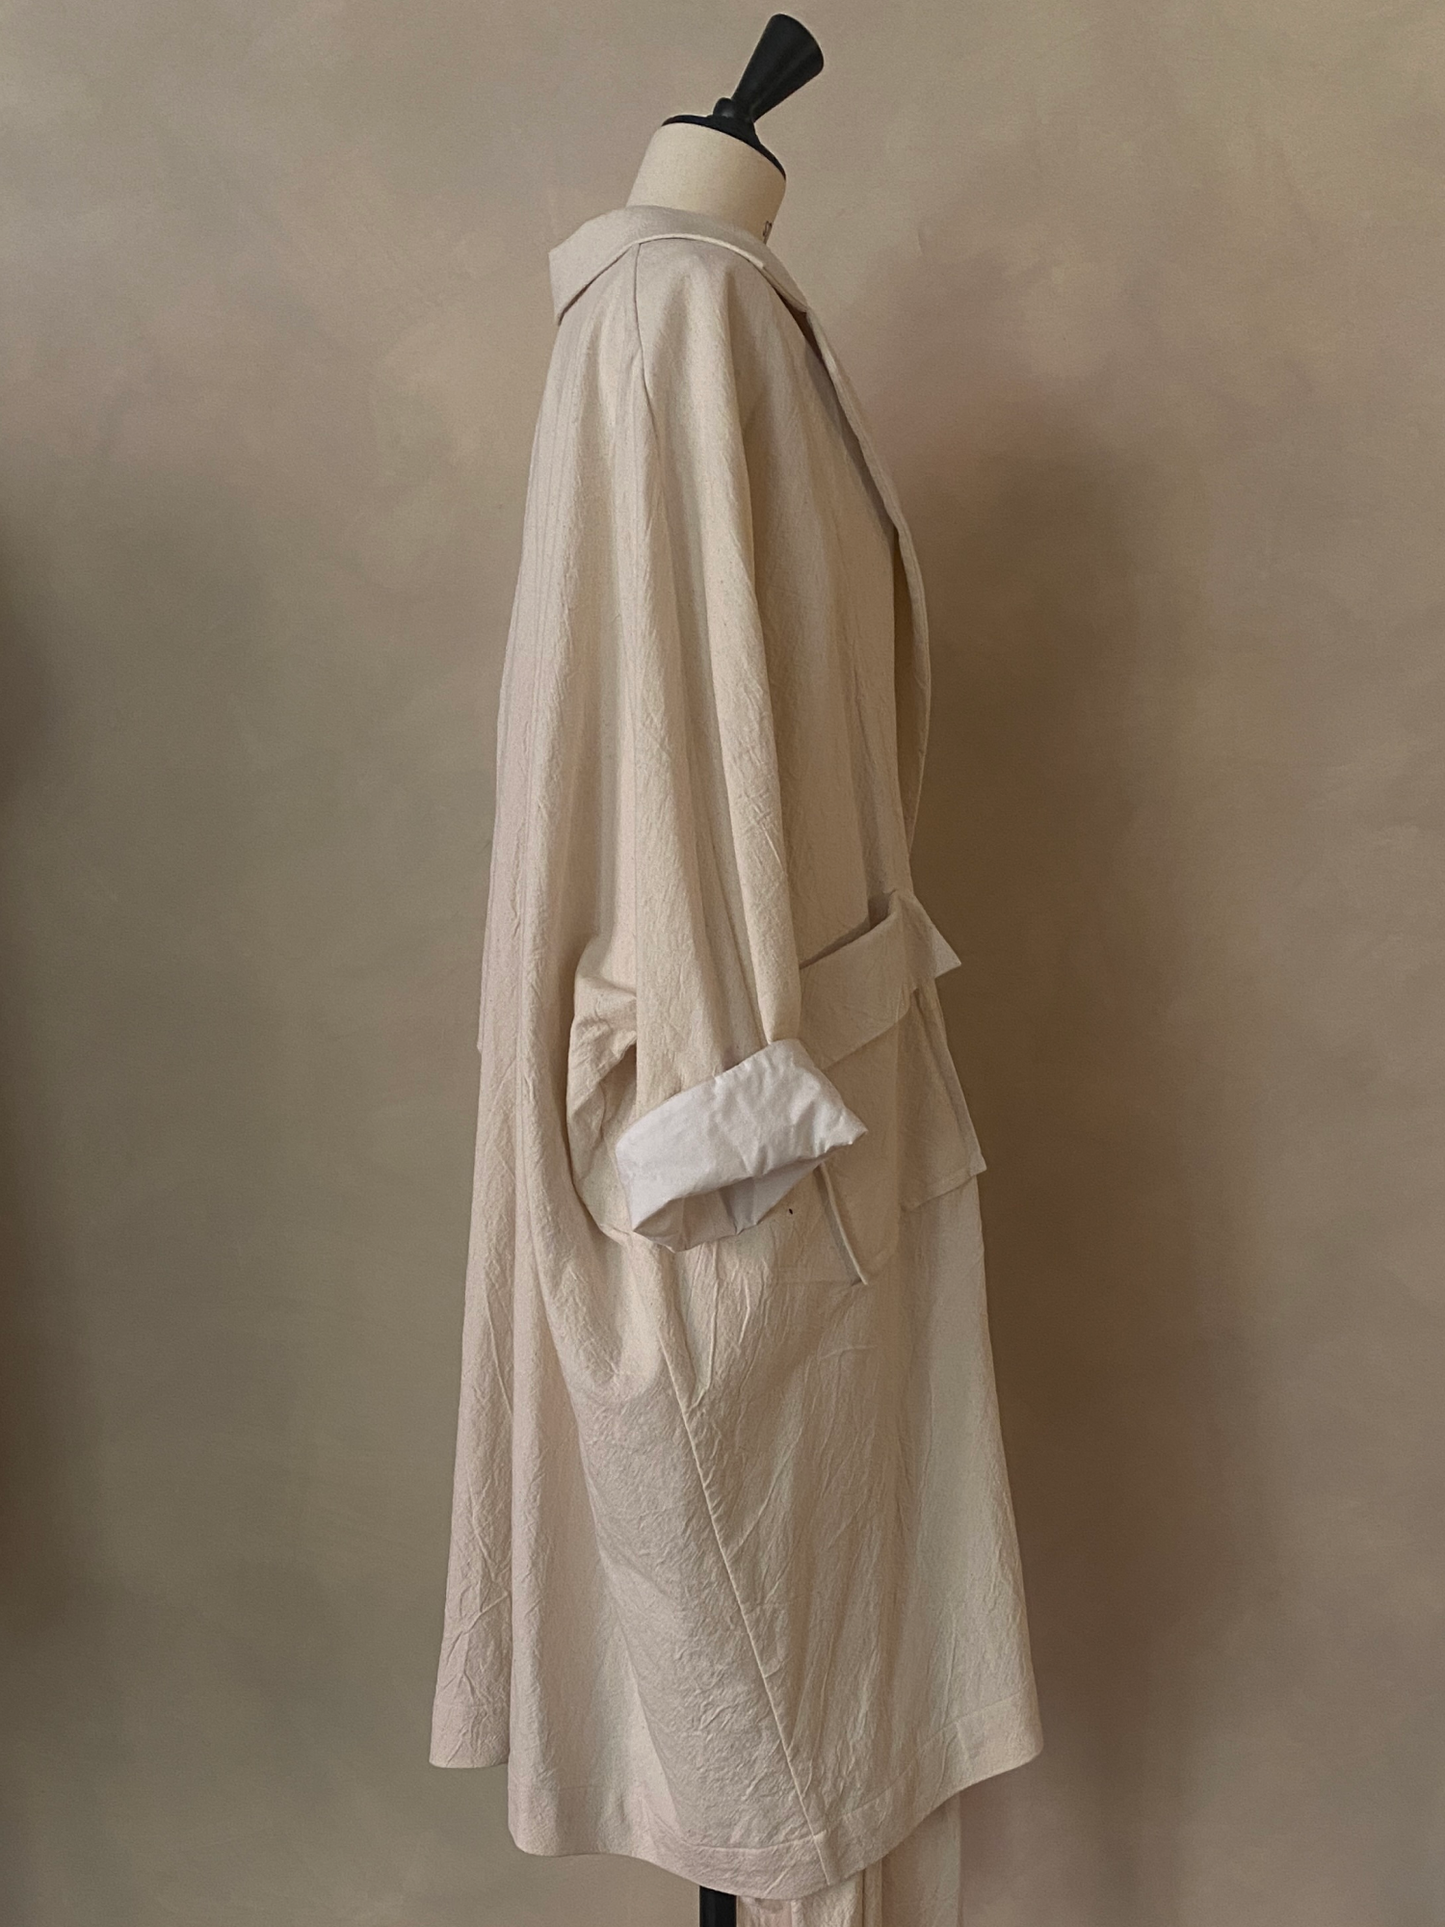 01. Oversized off-white linen coat